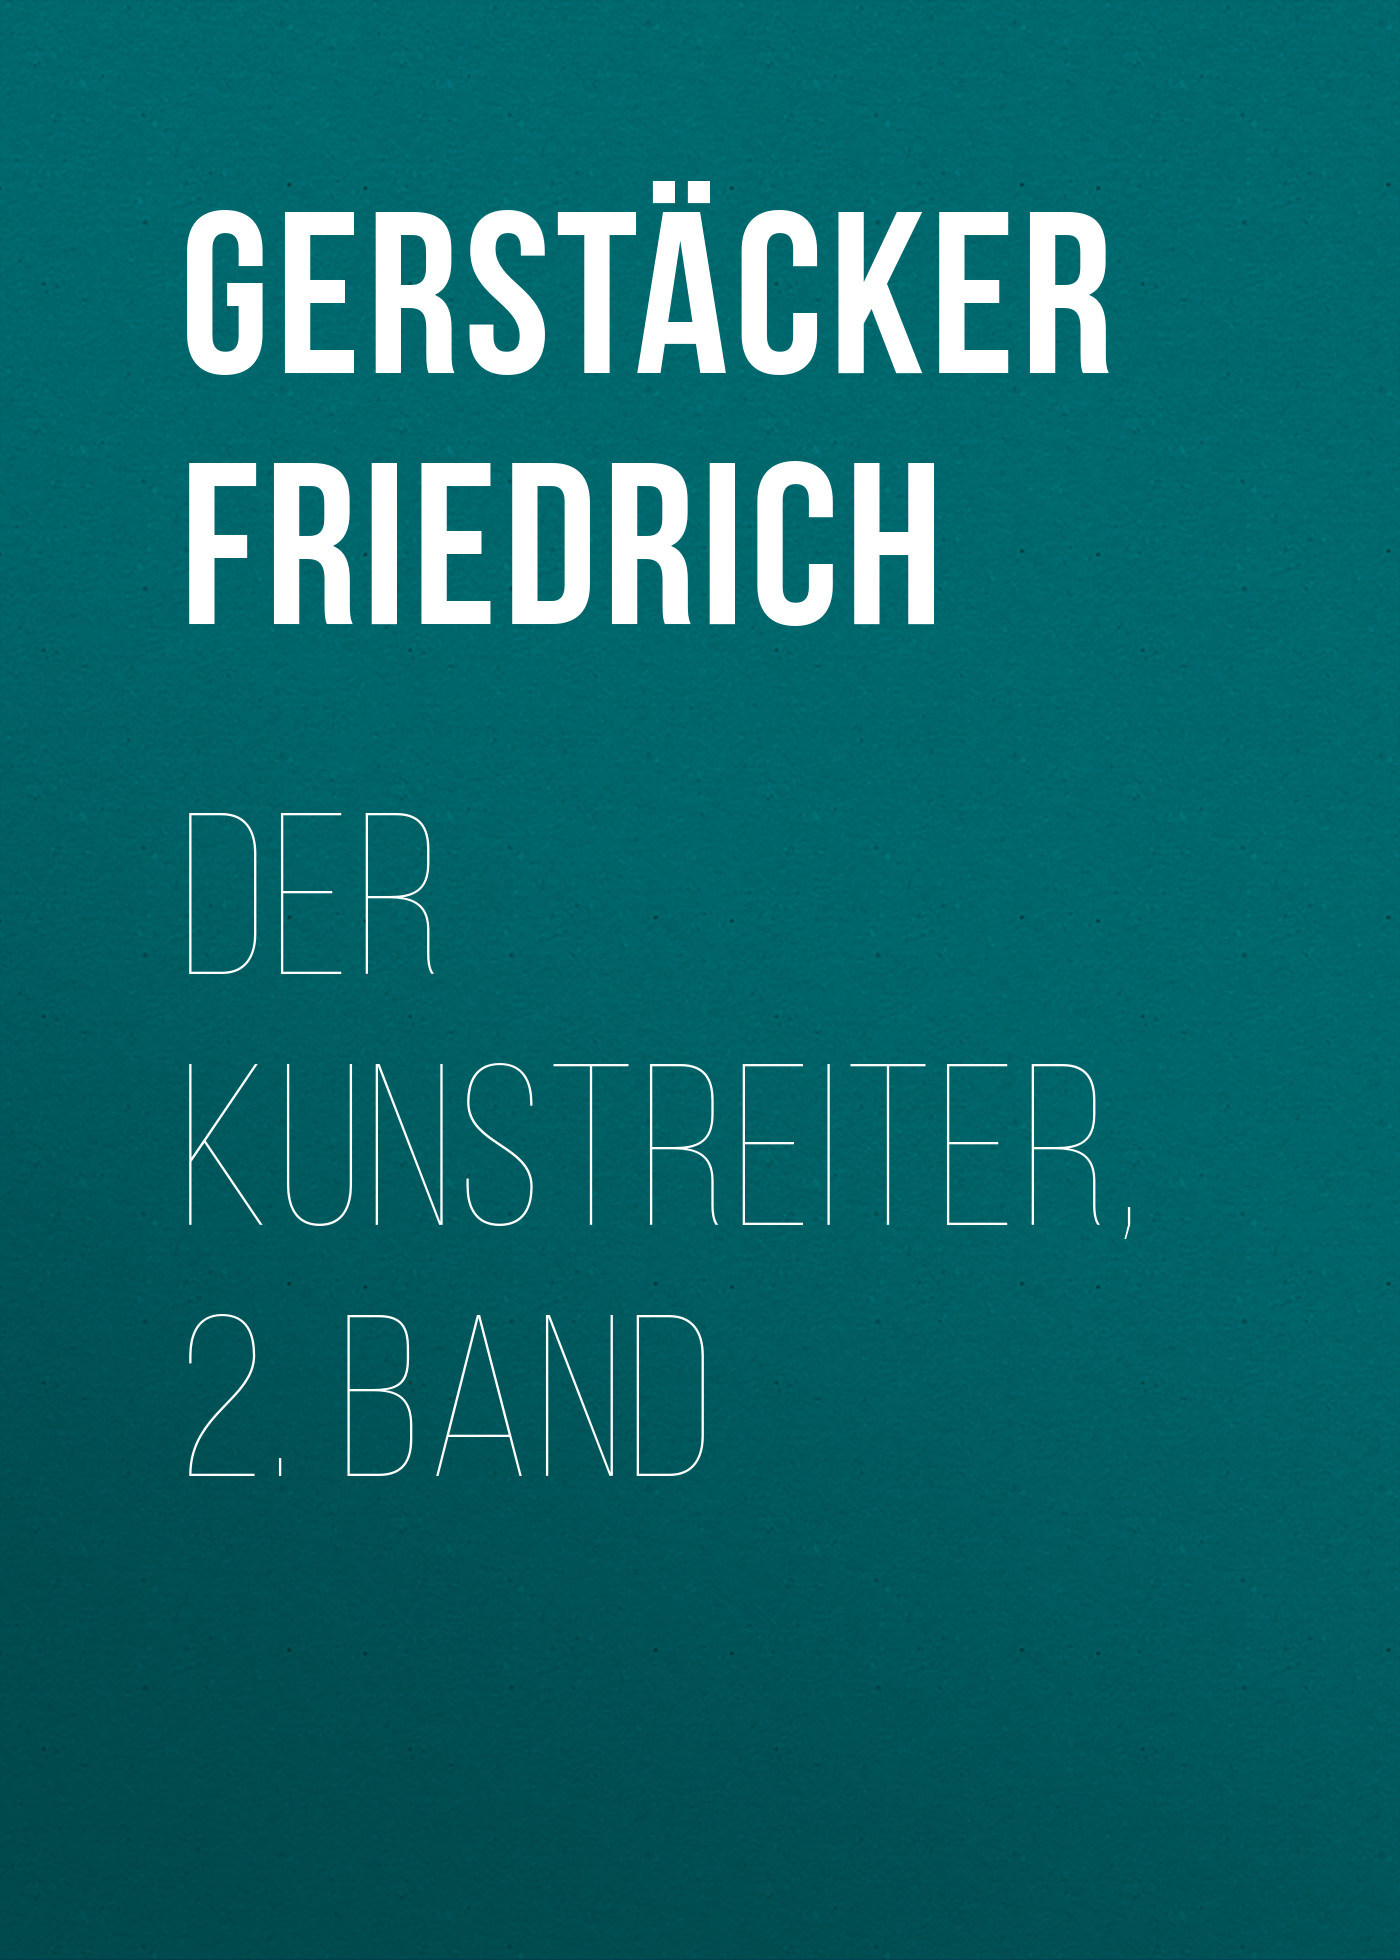 Книга Der Kunstreiter, 2. Band из серии , созданная Friedrich Gerstäcker, может относится к жанру Зарубежная старинная литература, Зарубежная классика. Стоимость электронной книги Der Kunstreiter, 2. Band с идентификатором 24937797 составляет 0 руб.